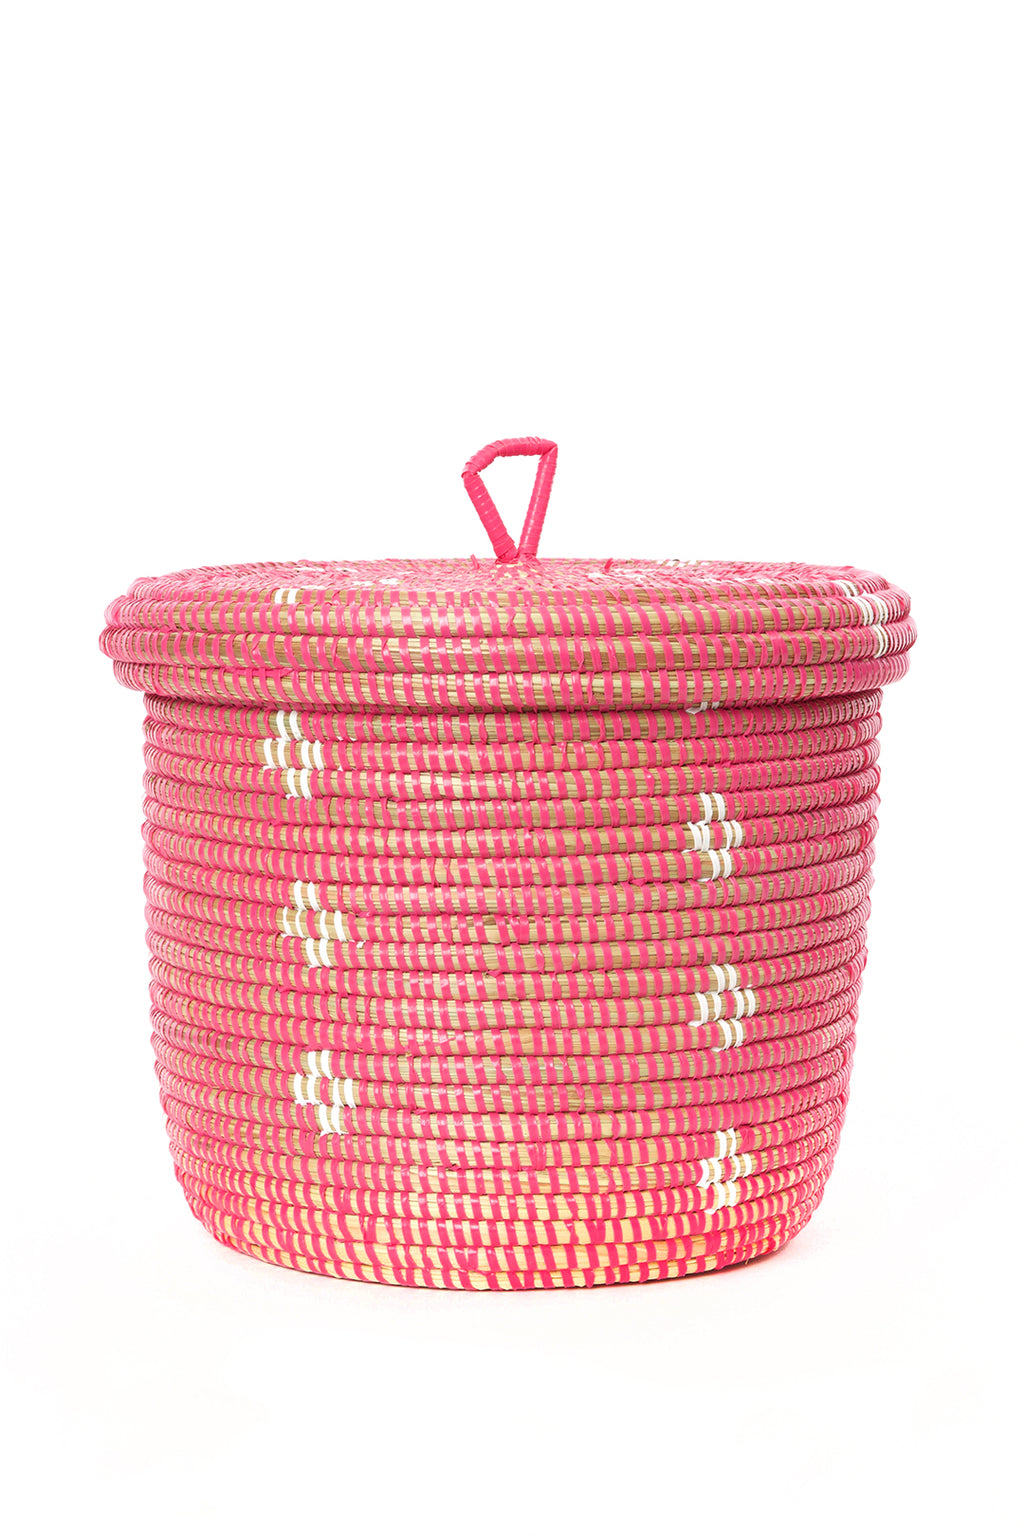 Pink and White Blossom Lidded Storage Basket Default Title